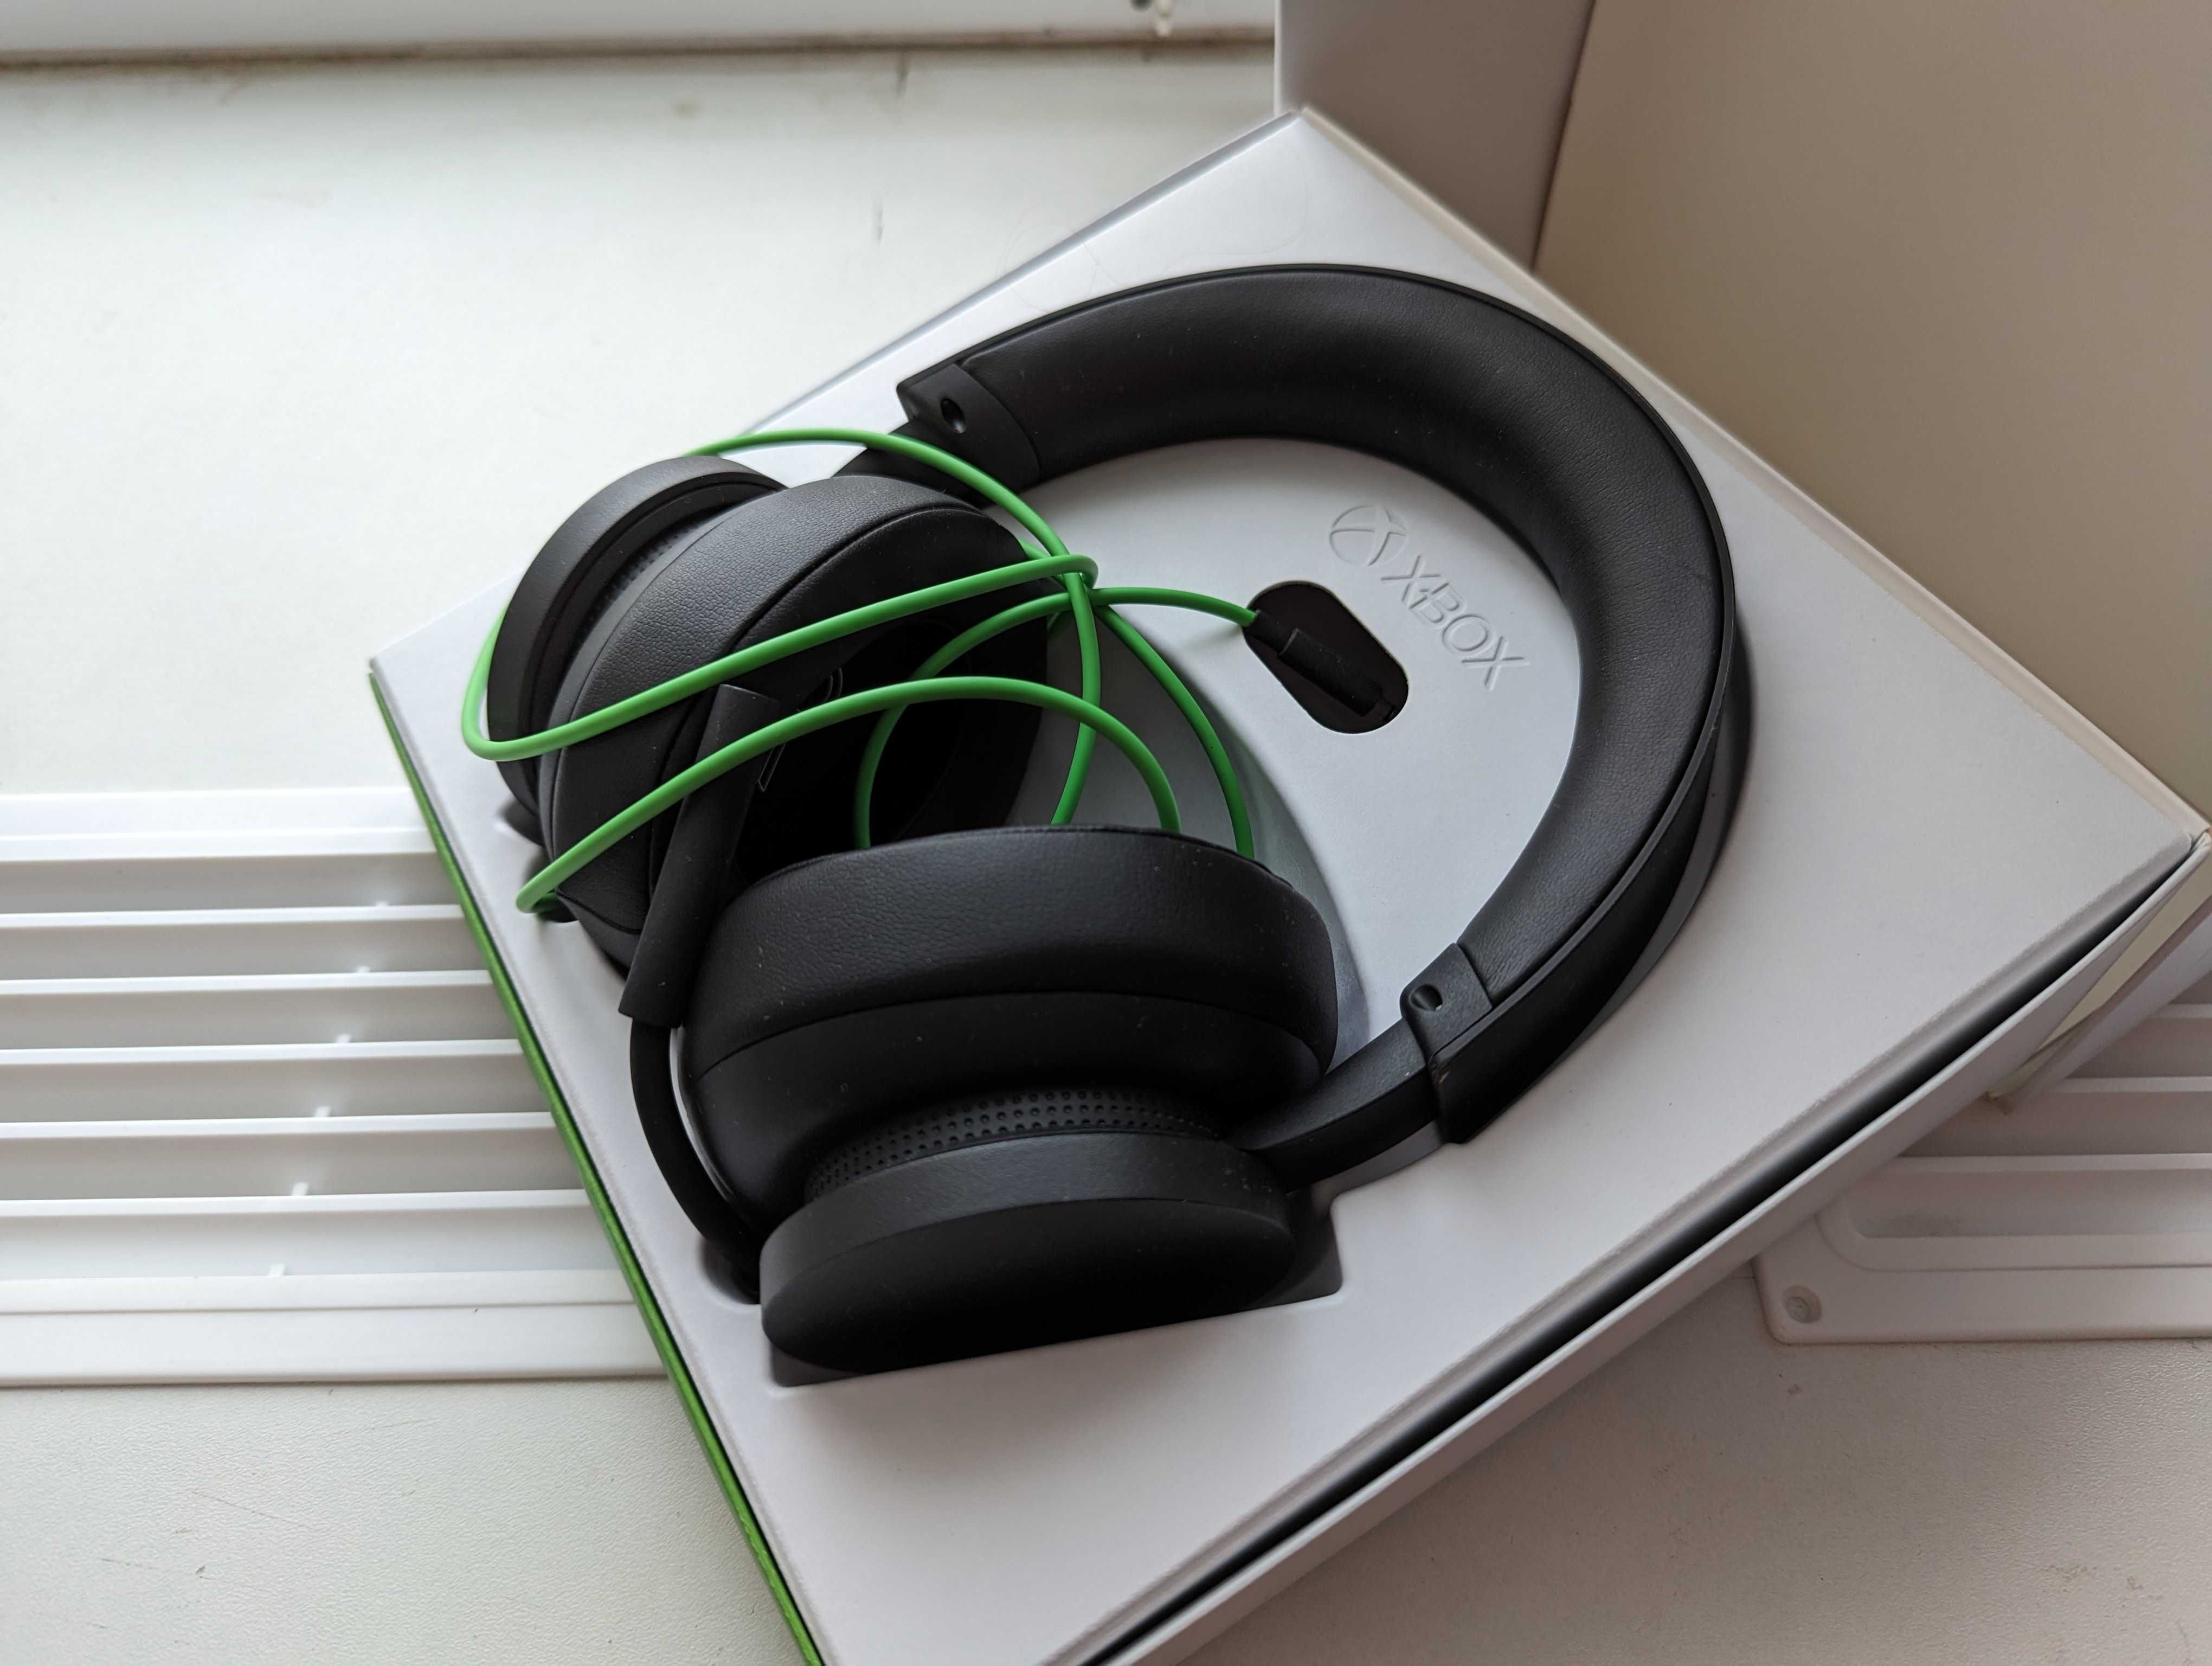 Навушники Xbox для Xbox X|S, Xbox One, Windows